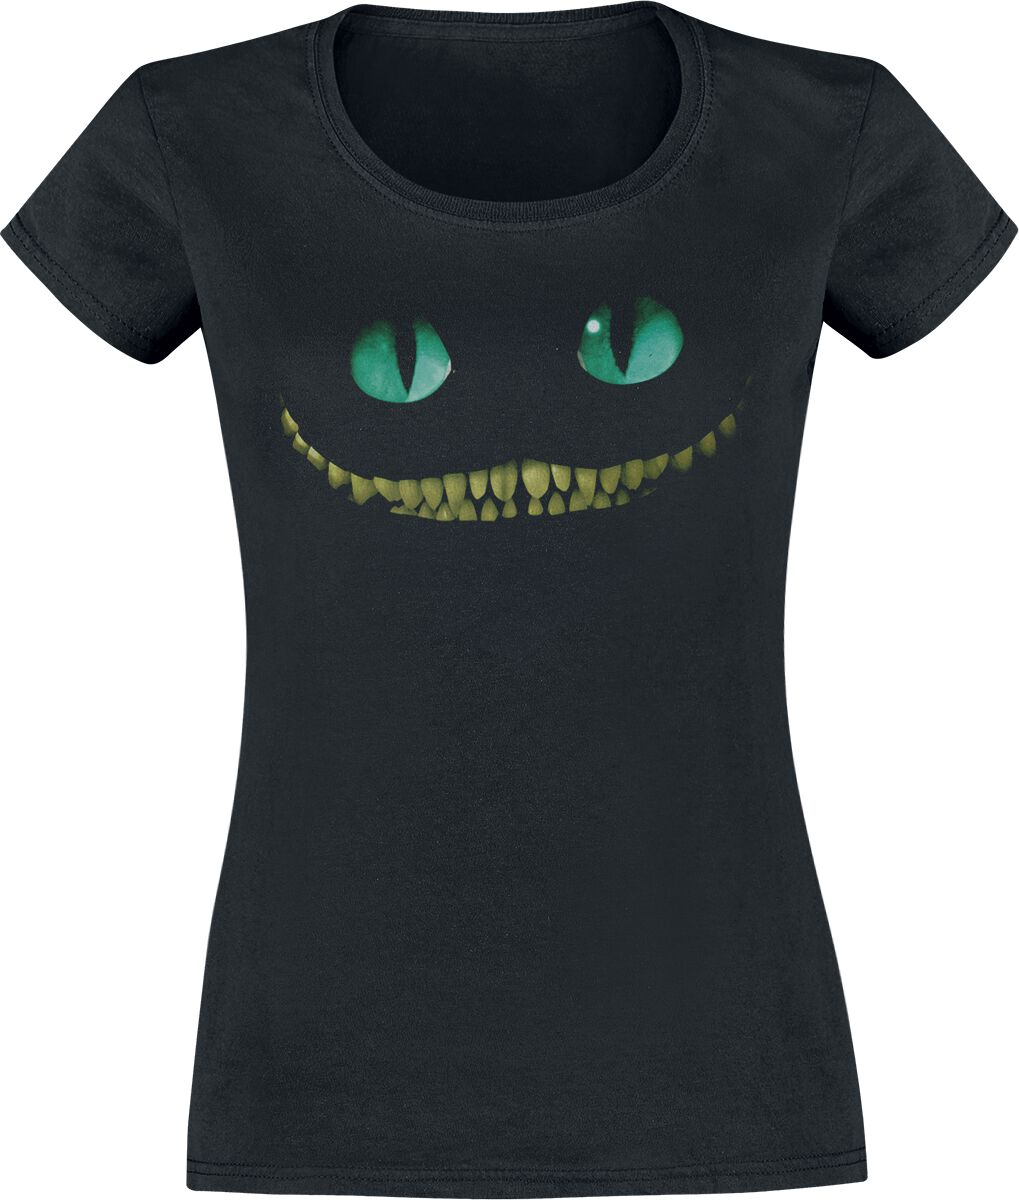 Alice im Wunderland - Disney T-Shirt - Grinsekatze - Lächeln - XS bis XXL - für Damen - Größe M - schwarz  - Lizenzierte